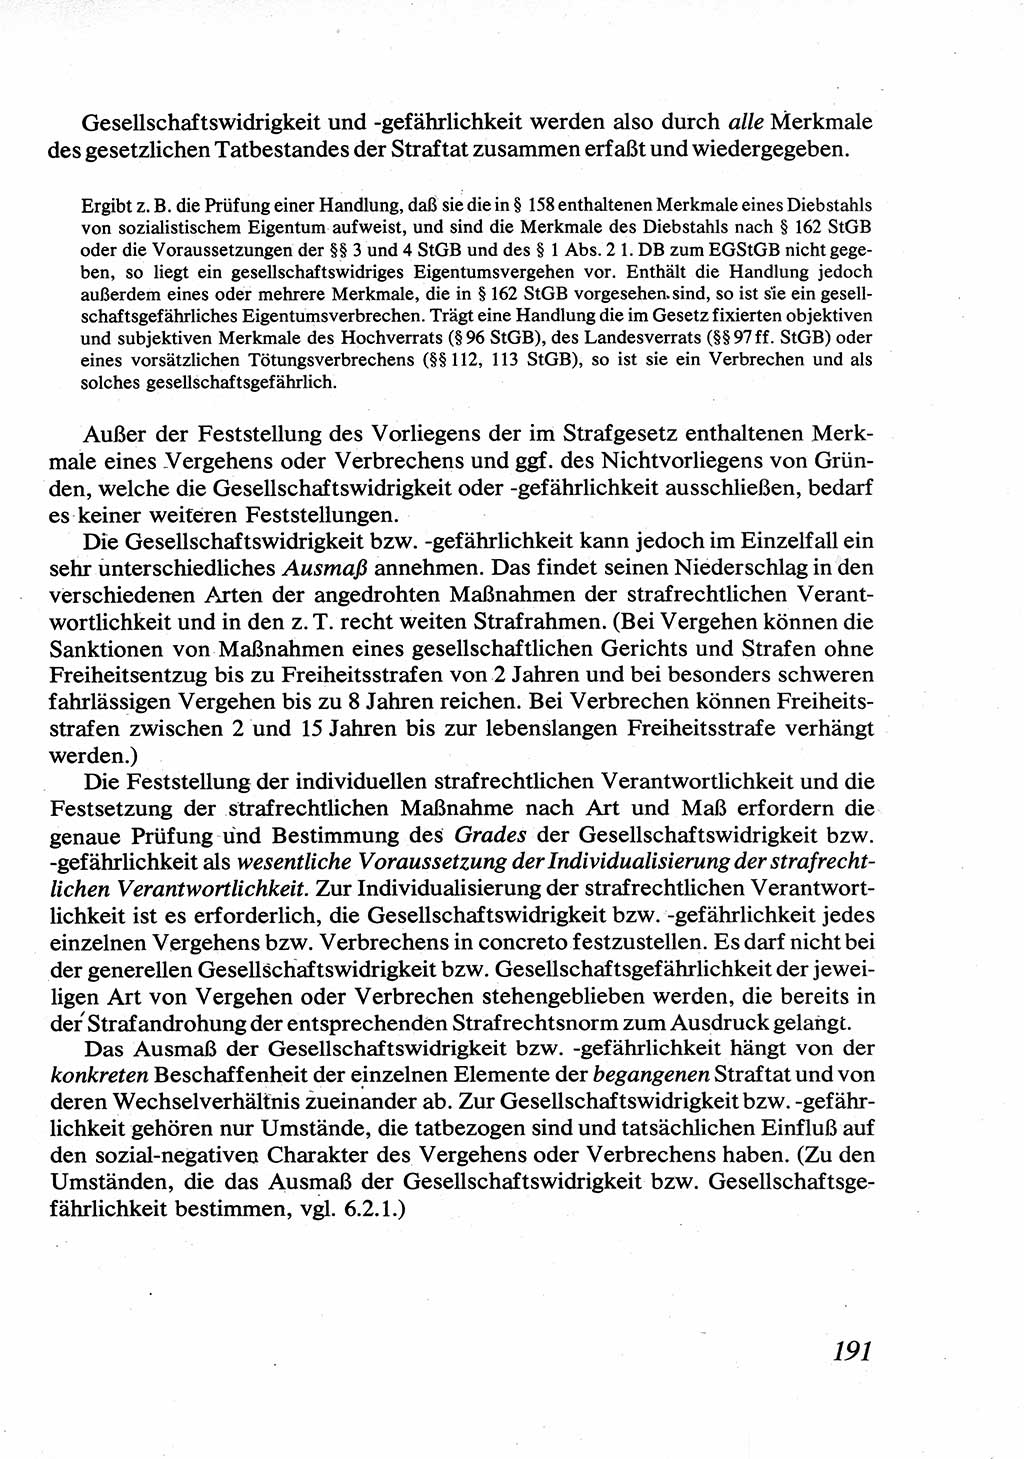 Strafrecht [Deutsche Demokratische Republik (DDR)], Allgemeiner Teil, Lehrbuch 1976, Seite 191 (Strafr. DDR AT Lb. 1976, S. 191)